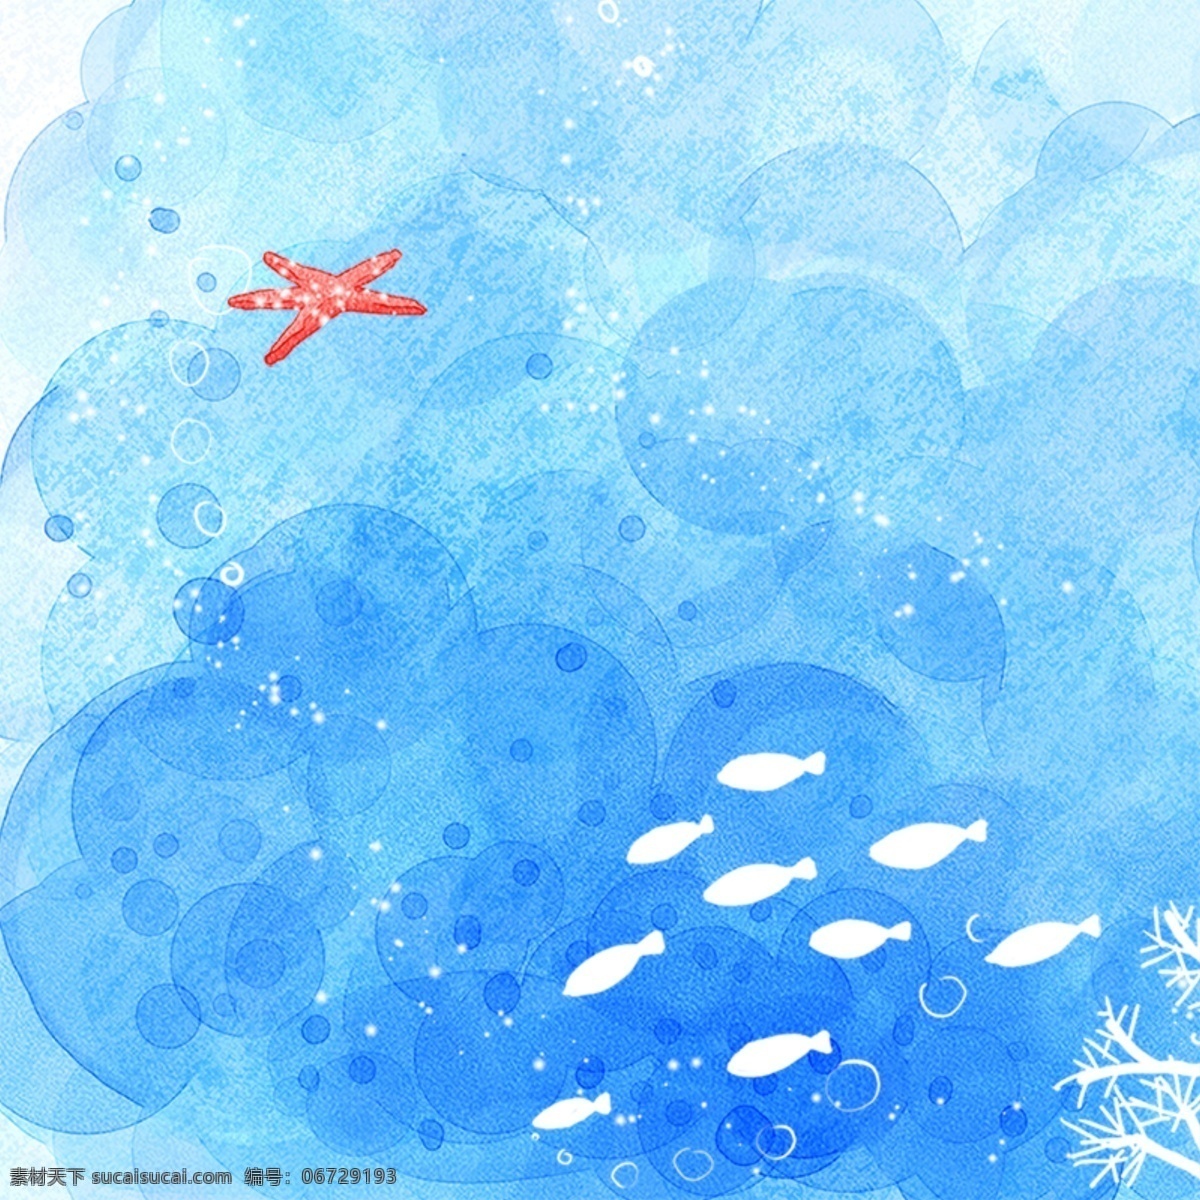 卡通海底背景 水彩 水墨 鱼 海星 海底背景 手绘 卡通背景 青色 天蓝色